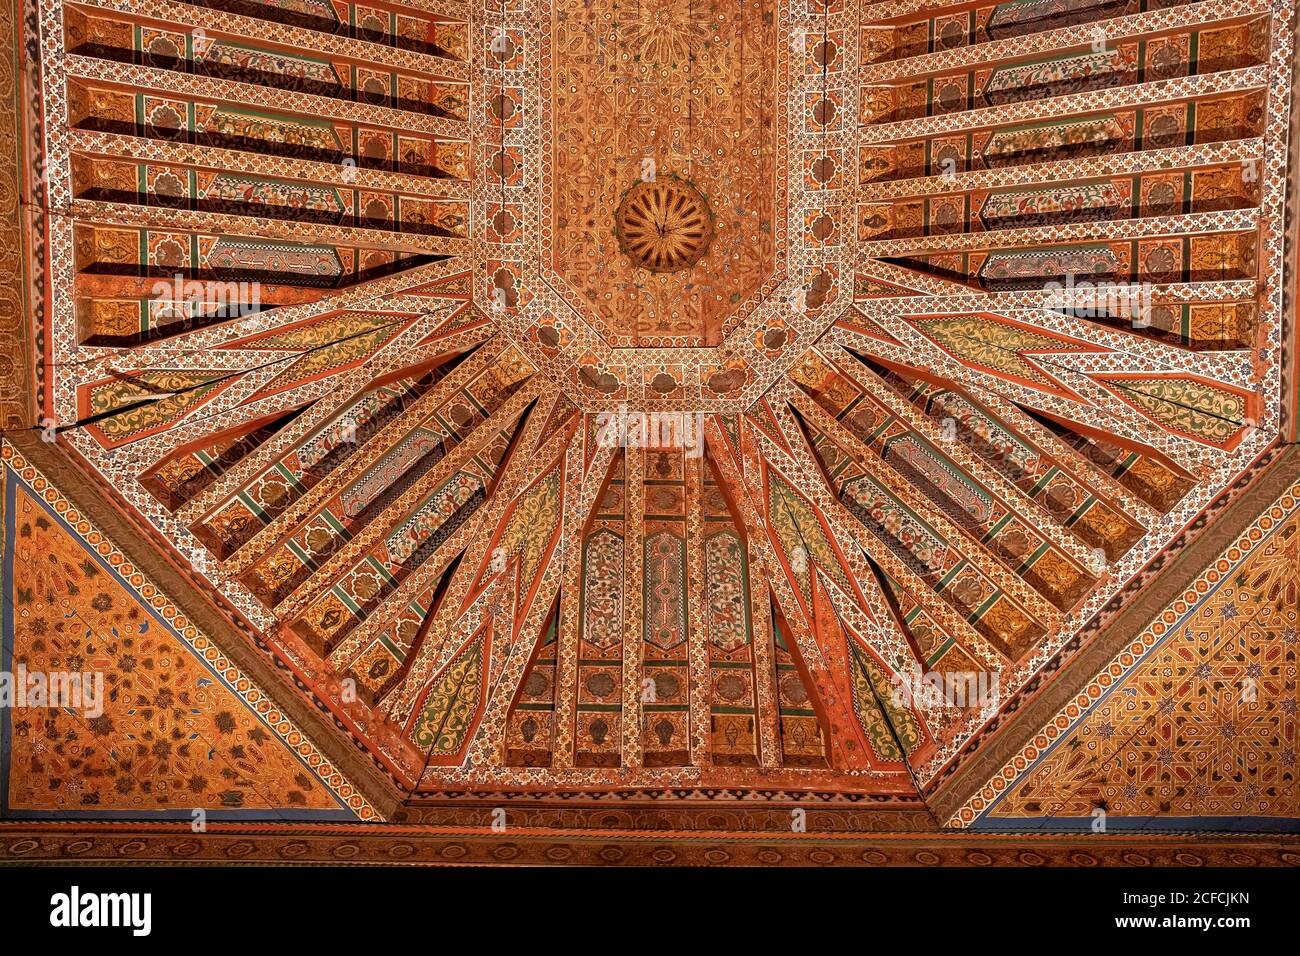 Architecture, Palais de Bahia, création, plafond en bois décoratif, Marrakech, Maroc, islamique, arabe Banque D'Images